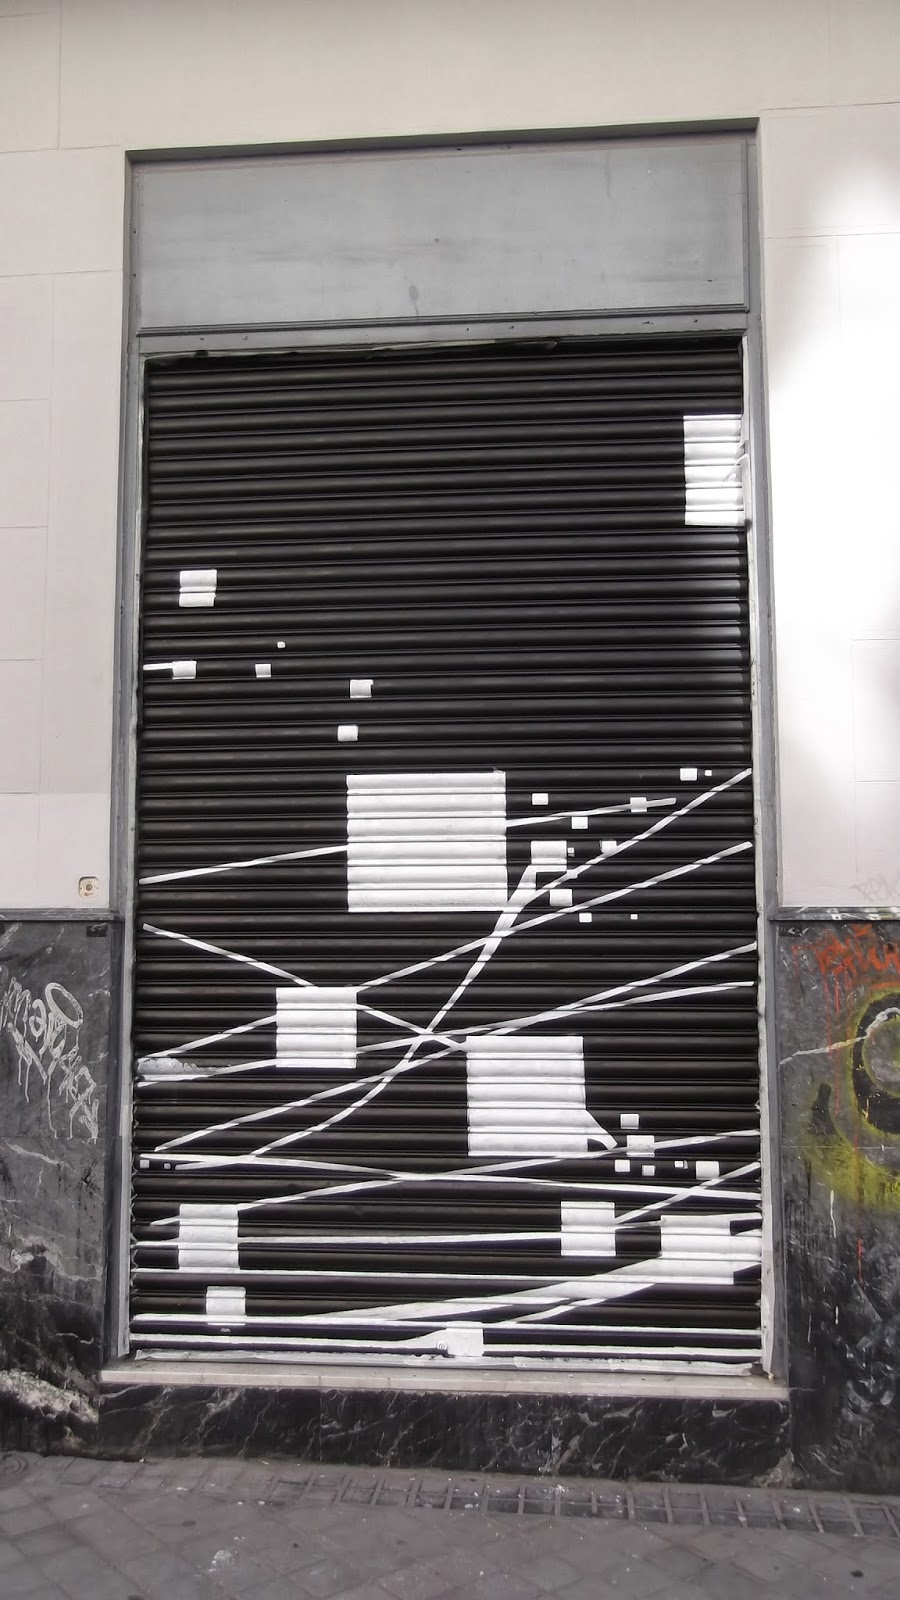 "ISDI", "MURAL", "STREETART", "arte urbano", "liquitex", "calle viriato", "Madrid"